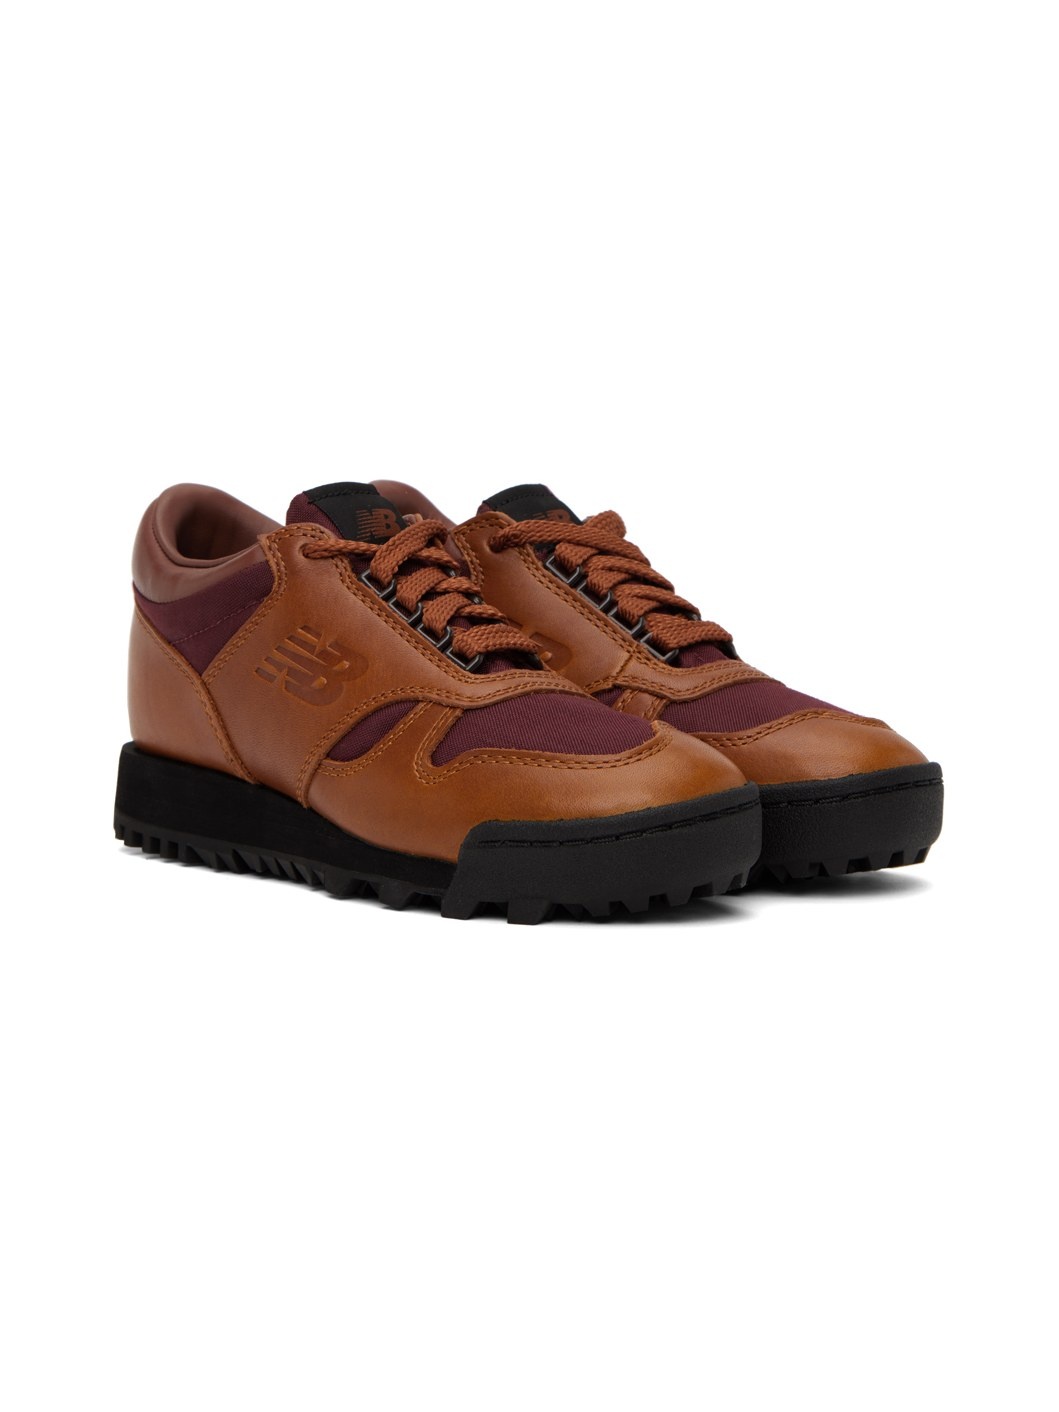 Brown & Burgundy Rainier Low Sneakers - 4